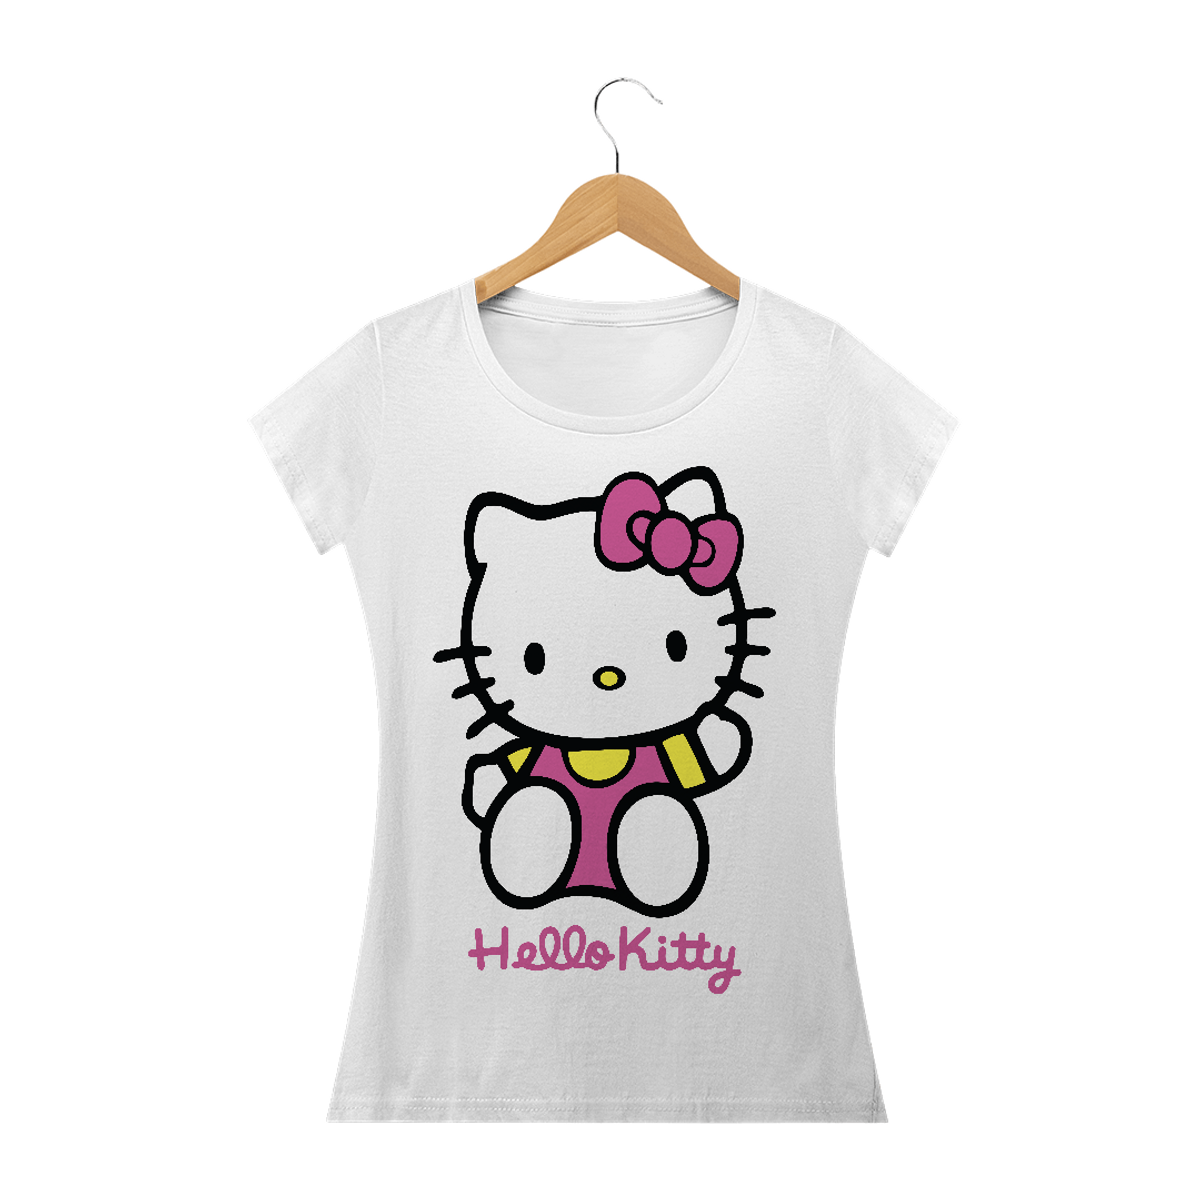 Nome do produto: Hello Kitty 04